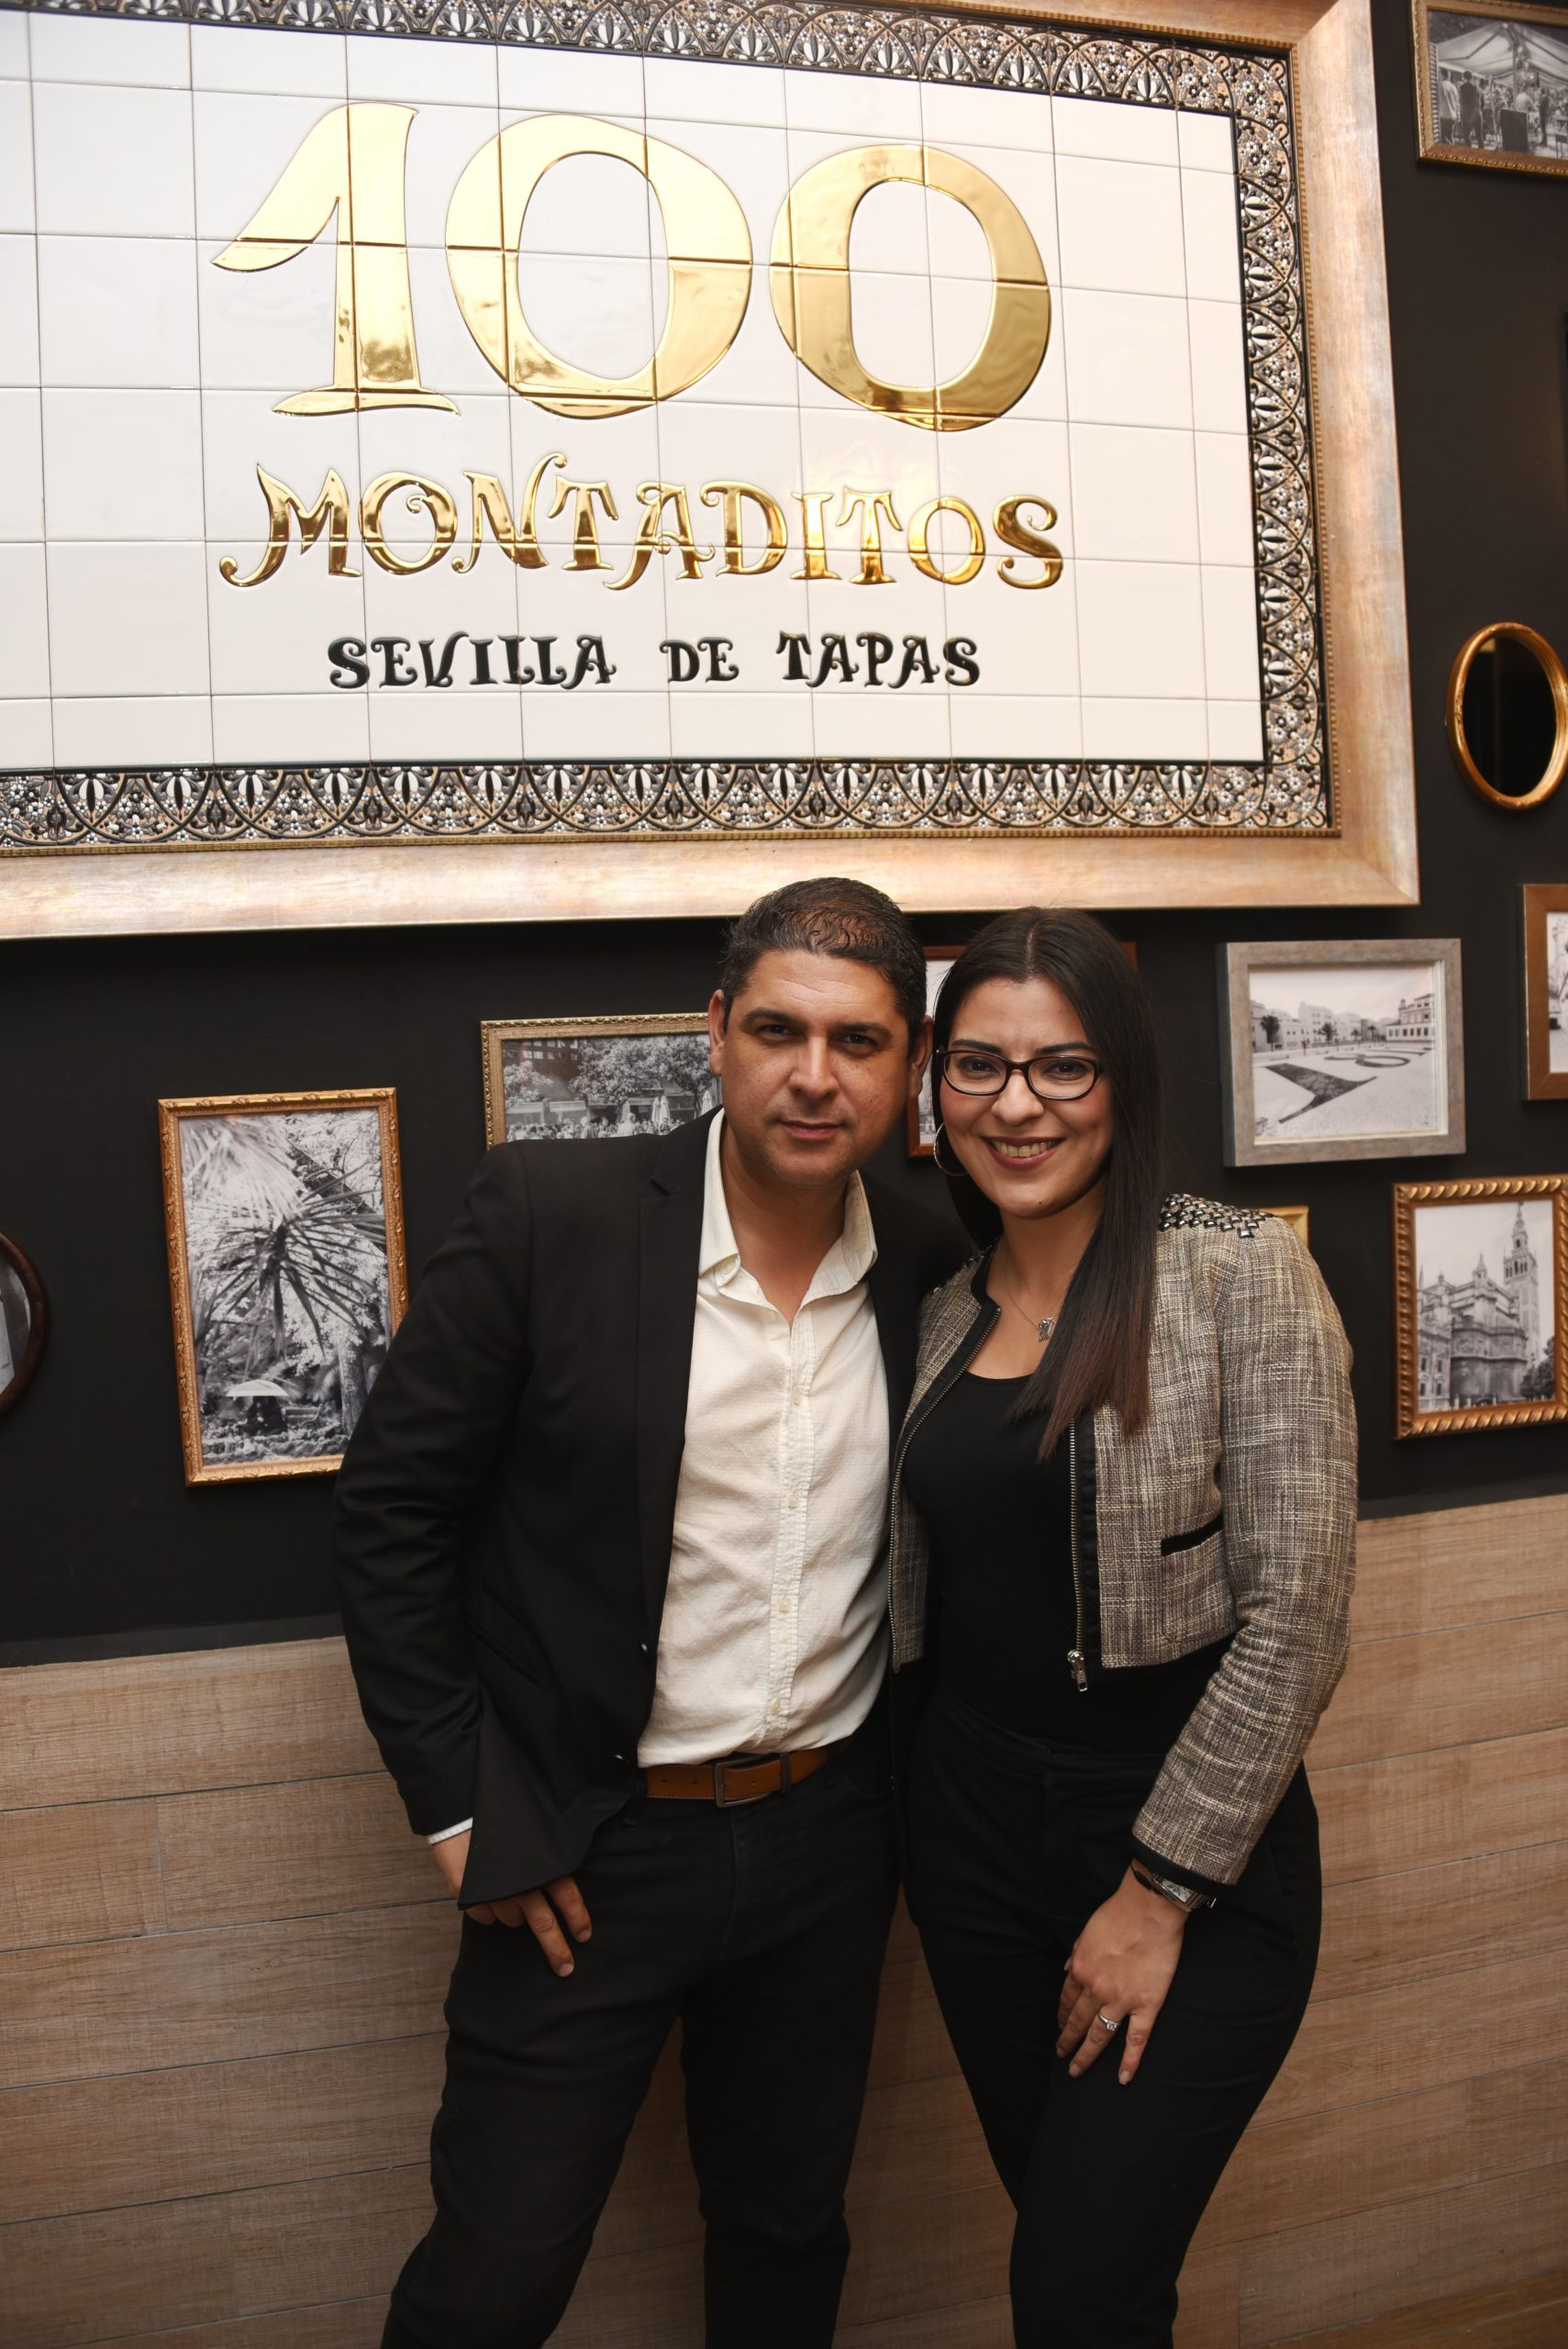 100 Montaditos aterriza en Honduras con los mejores sabores y productos de España